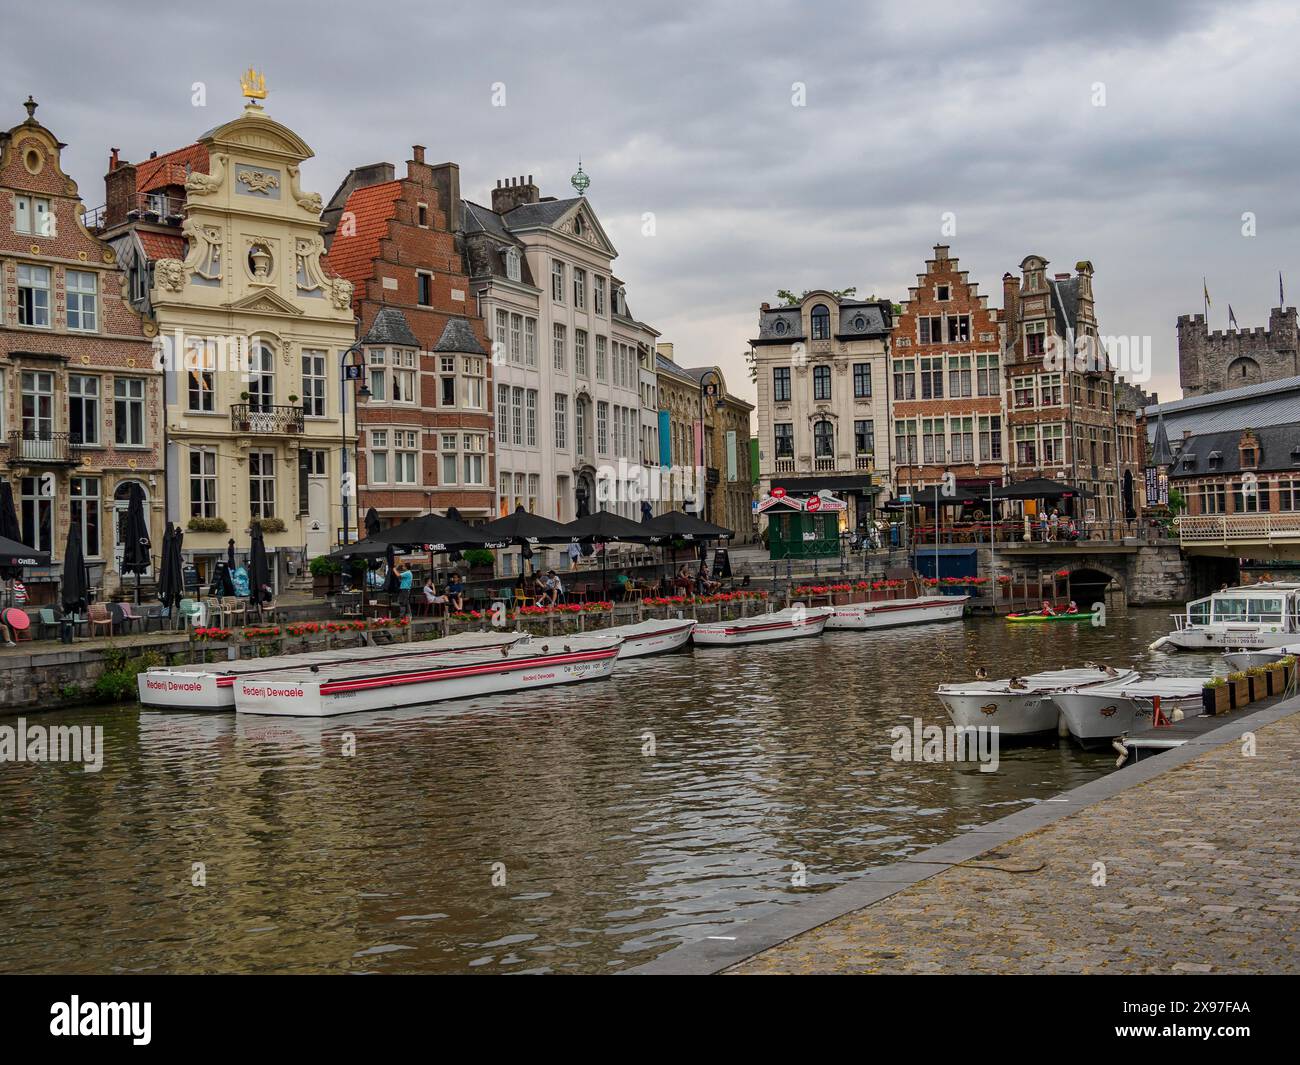 Scena cittadina con edifici storici lungo un canale, barche e un cielo nuvoloso, skyline di una città storica sul fiume con facciate antiche e bellissime Foto Stock